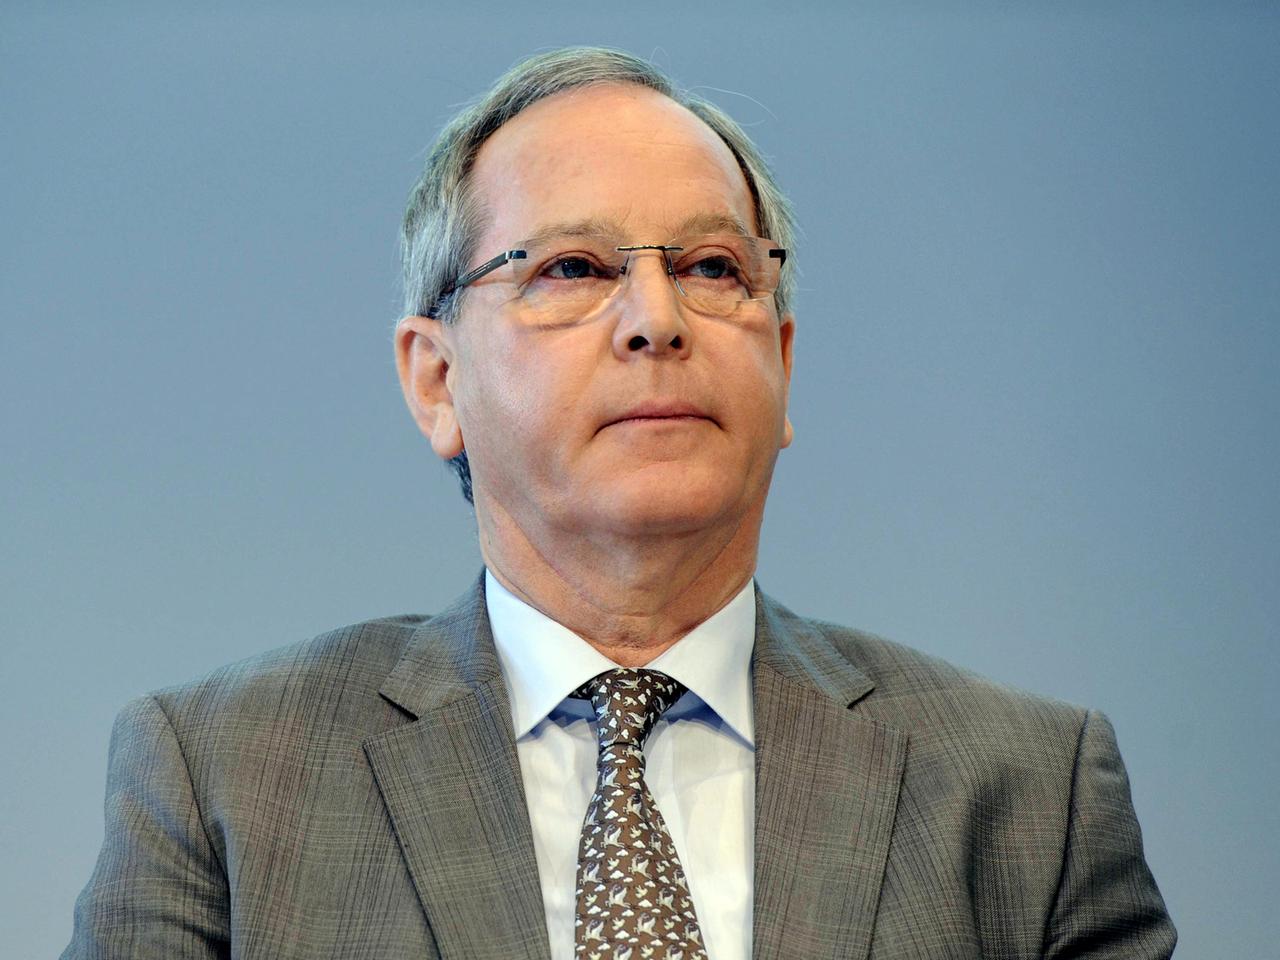 Ehemaliger ADAC-Präsident Peter Meyer während einer Pressekonferenz in Bonn.